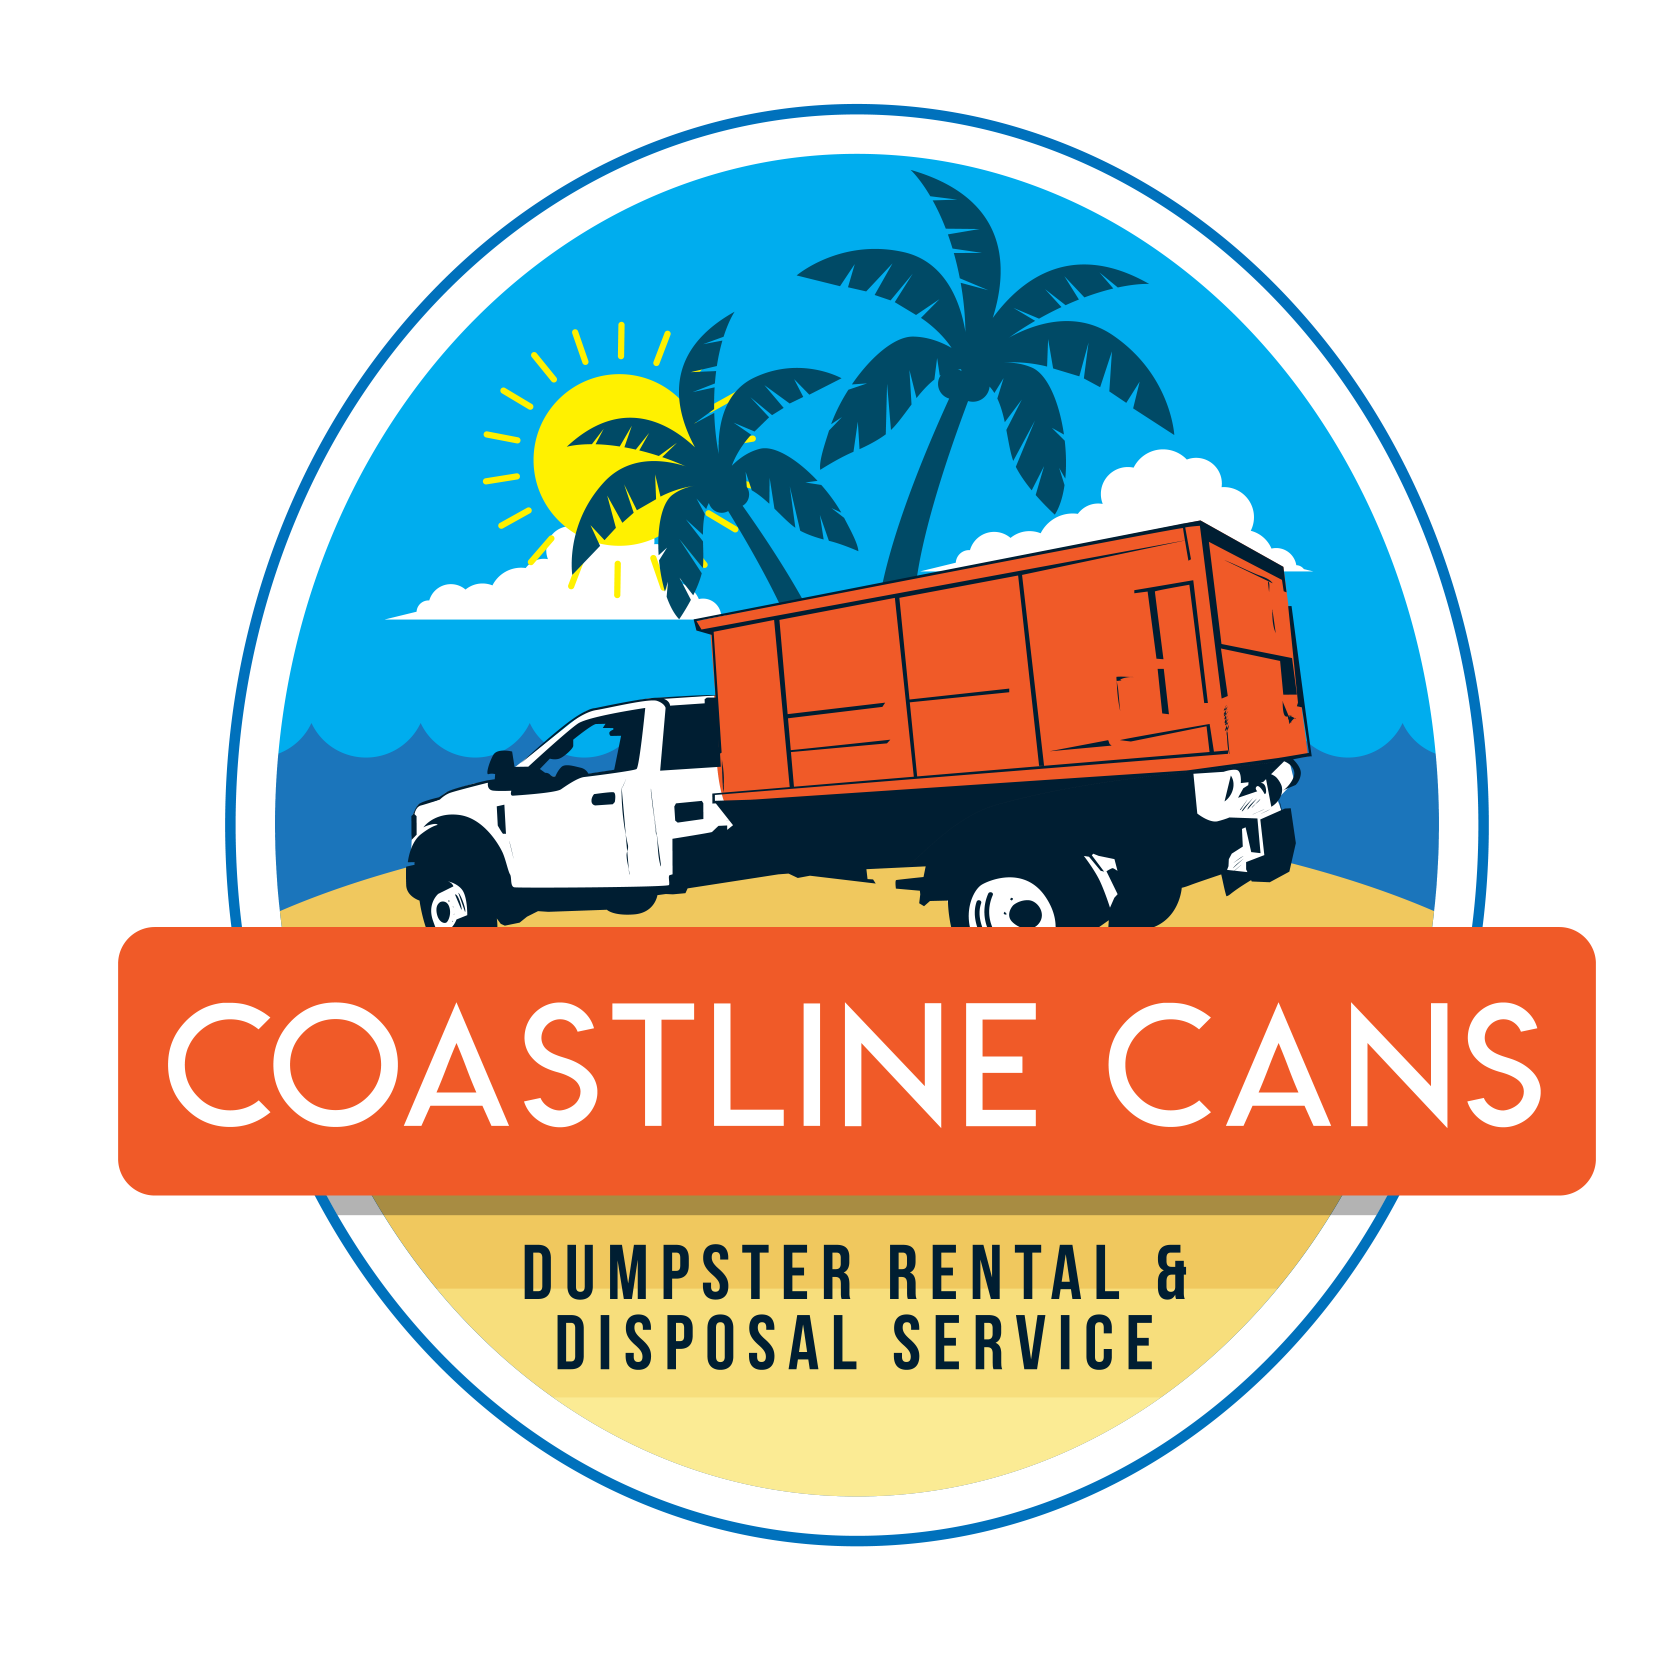 Coastline Cans